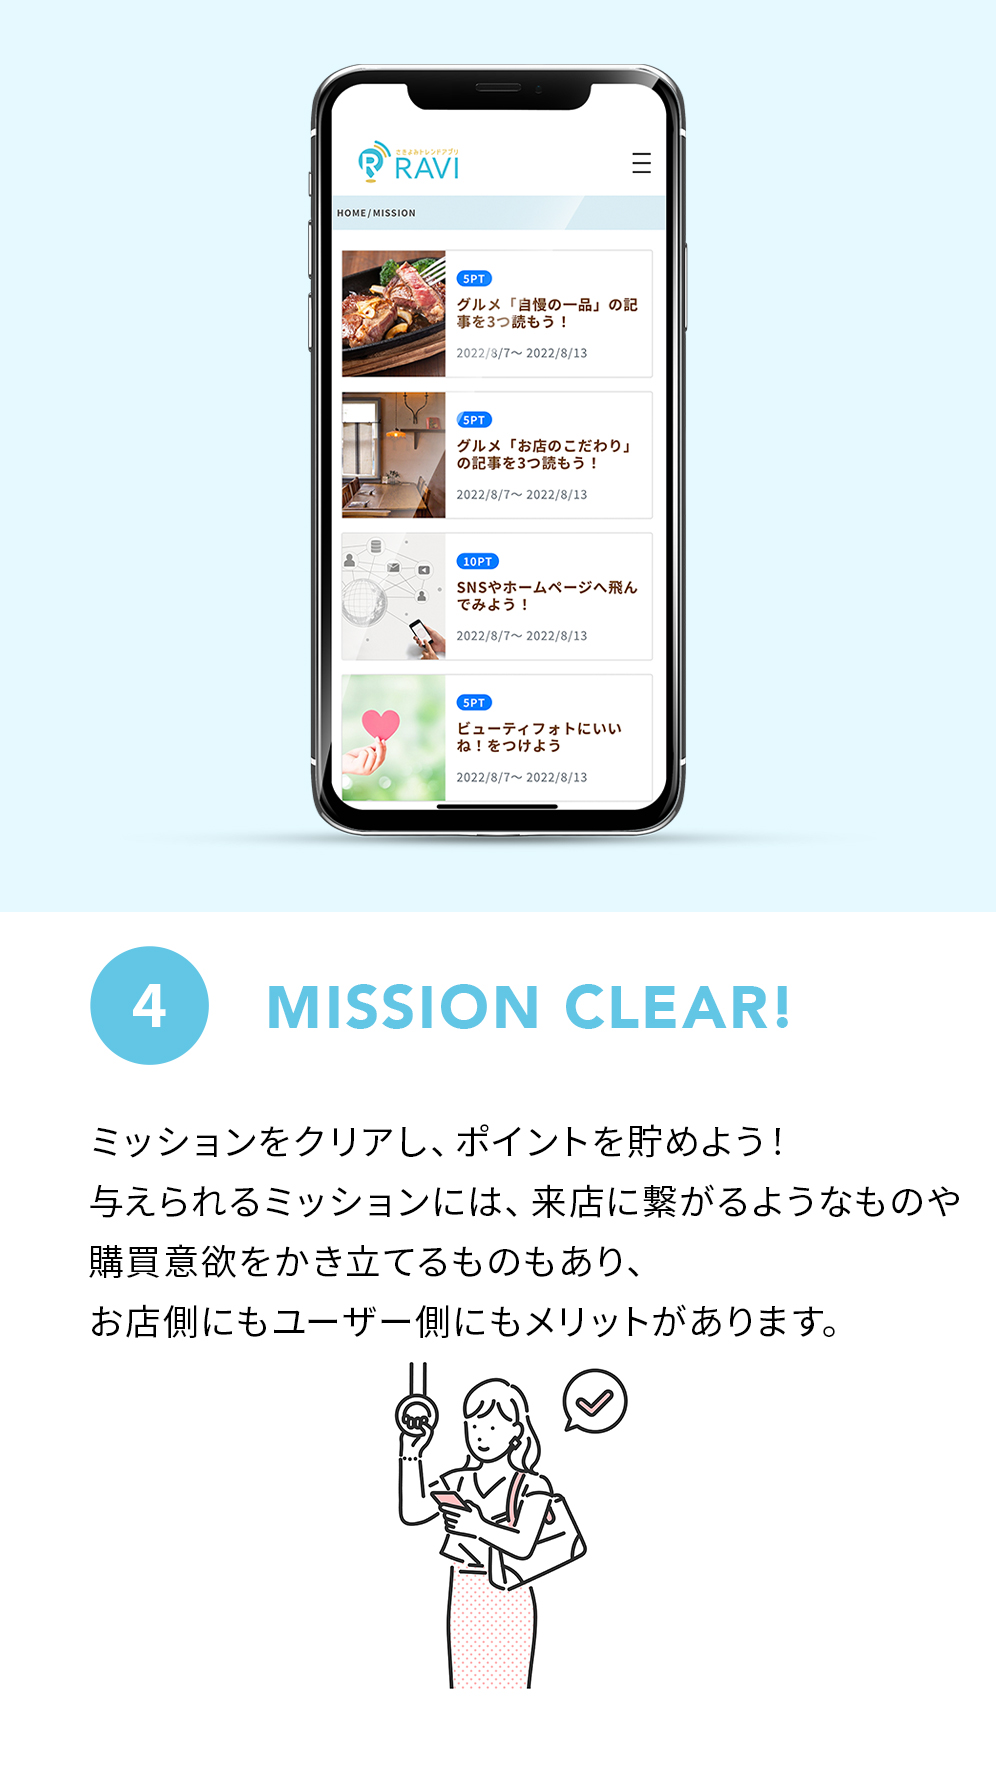 4 MISSION CLEAR! ミッションをクリアし、ポイントを貯めよう！与えられるミッションには、来店に繋がるようなものや購買意欲をかき立てるものもあり、お店側にもユーザー側にもメリットがあります。